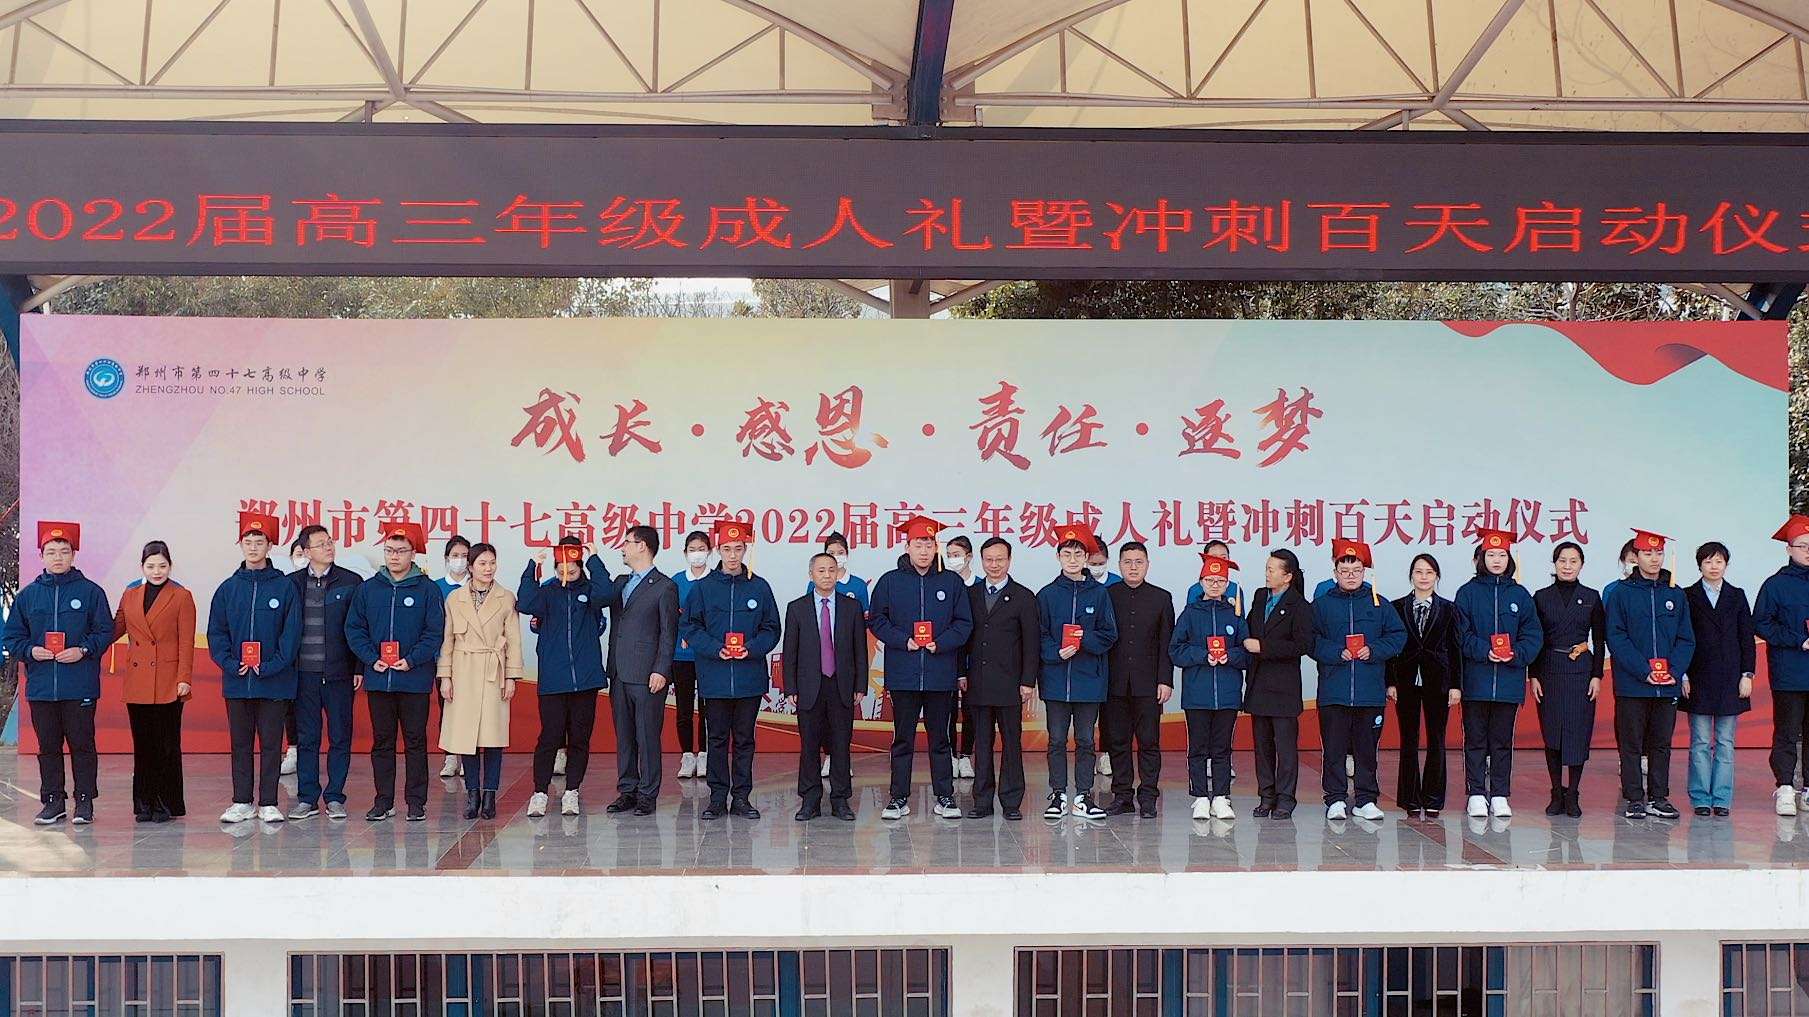 郑州市第四十七高级中学2022届高三年级成人礼暨冲刺百天启动仪式